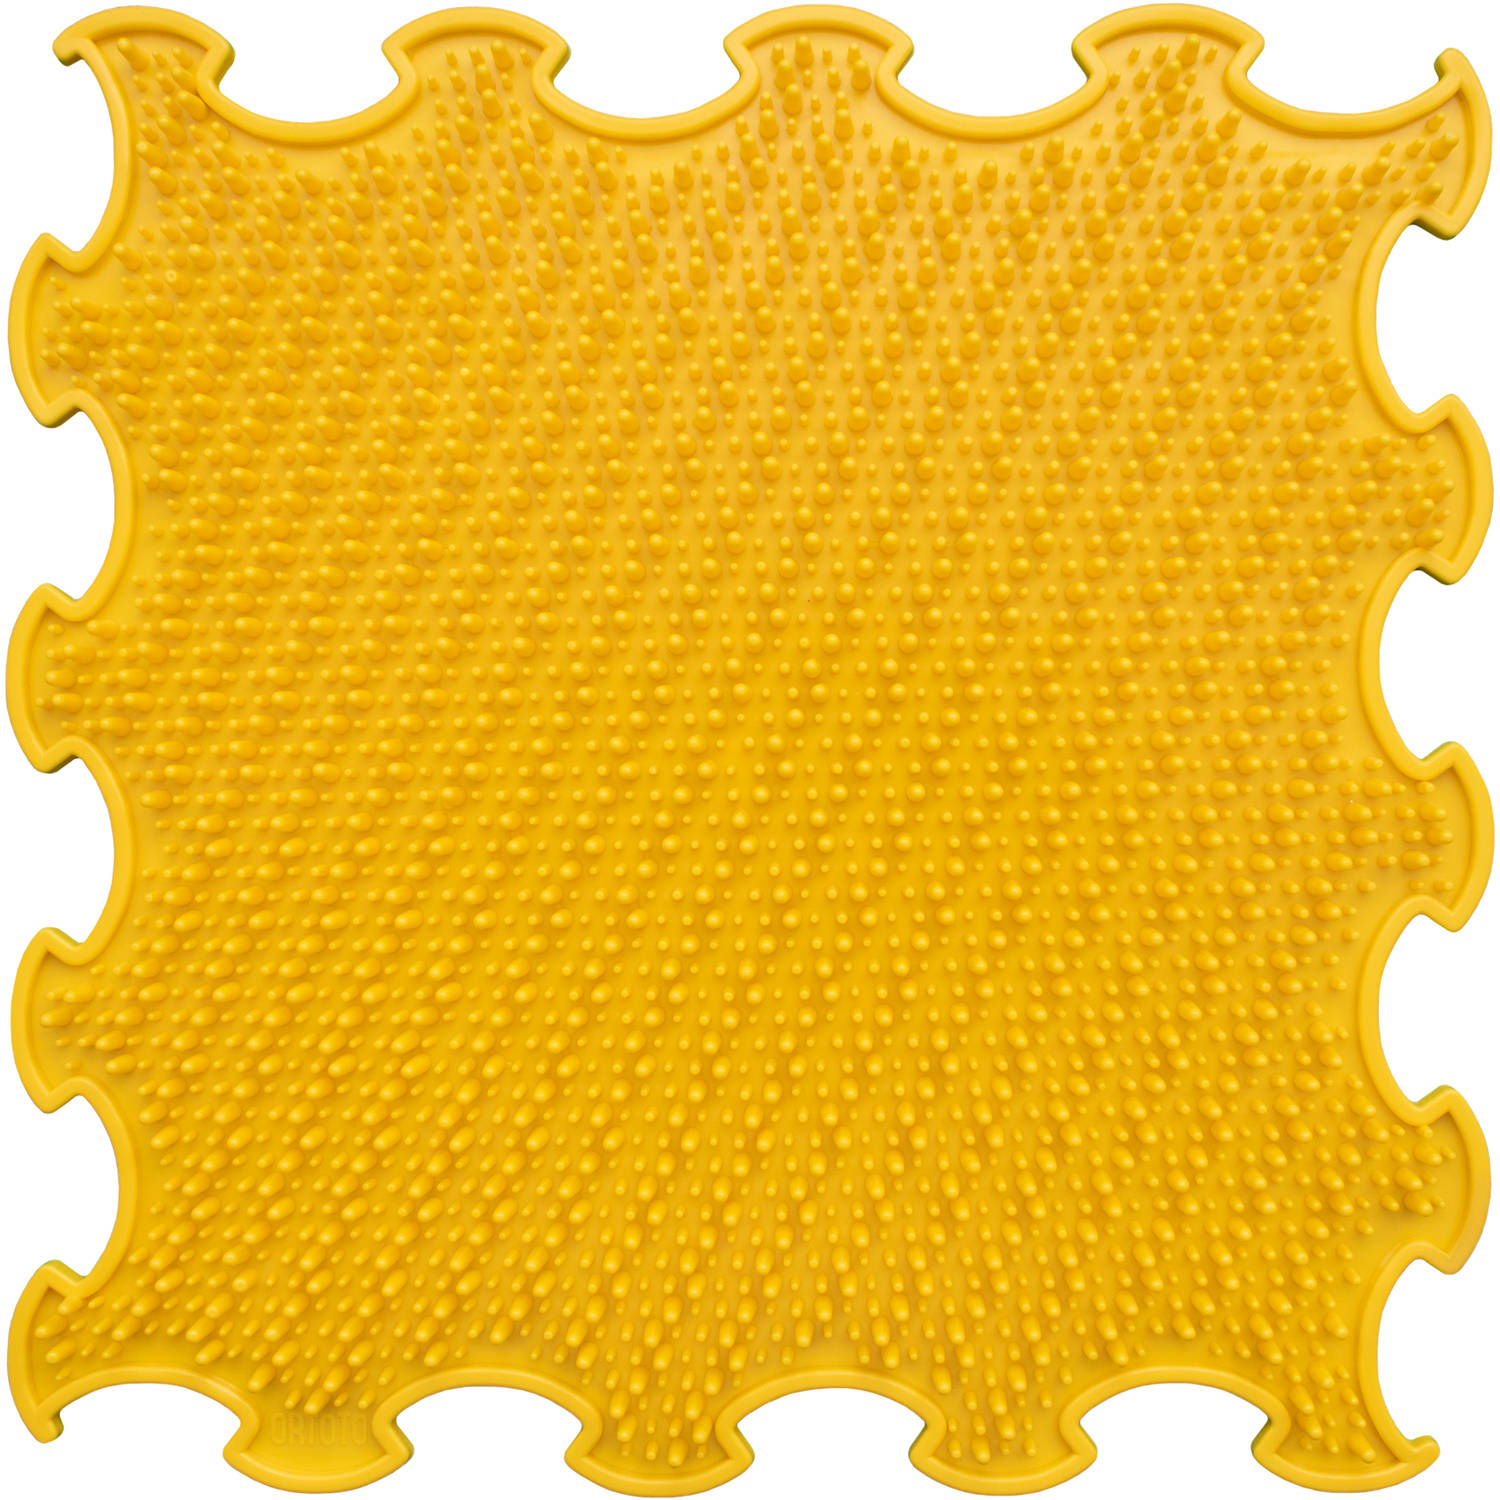 Ortoto sensorische mat Grass Yellow